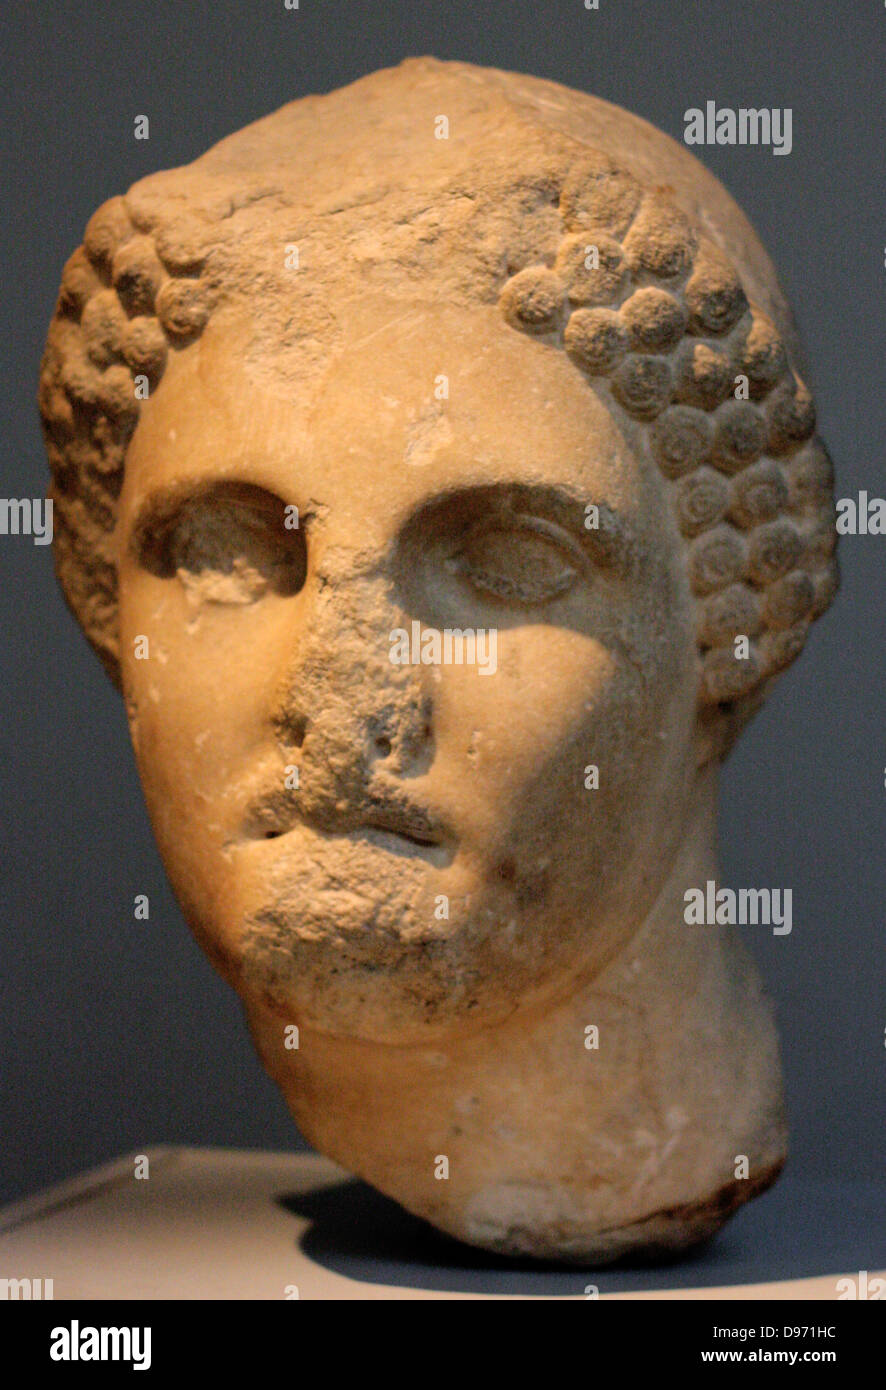 Kopf von einer kolossalen Statue einer Frau trägt ein Sakko (Gap) parischem Marmor im Nordwesten des Mausoleums gefunden, etwa 350 v. Chr. den Kopf einer Statue von ähnlicher Größe kommt zu dem kolossalen weibliche Figur angezeigt in diesem Zimmer (die - so genannte Artemisia, Skulptur (100). Das Porträt kann eine der weiblichen Mitglieder der Hekatomnid Dynastie dar. Die Reihe der dynastischen Porträts wahrscheinlich standen zwischen den ionischen Säulen des Peristyl. Stockfoto